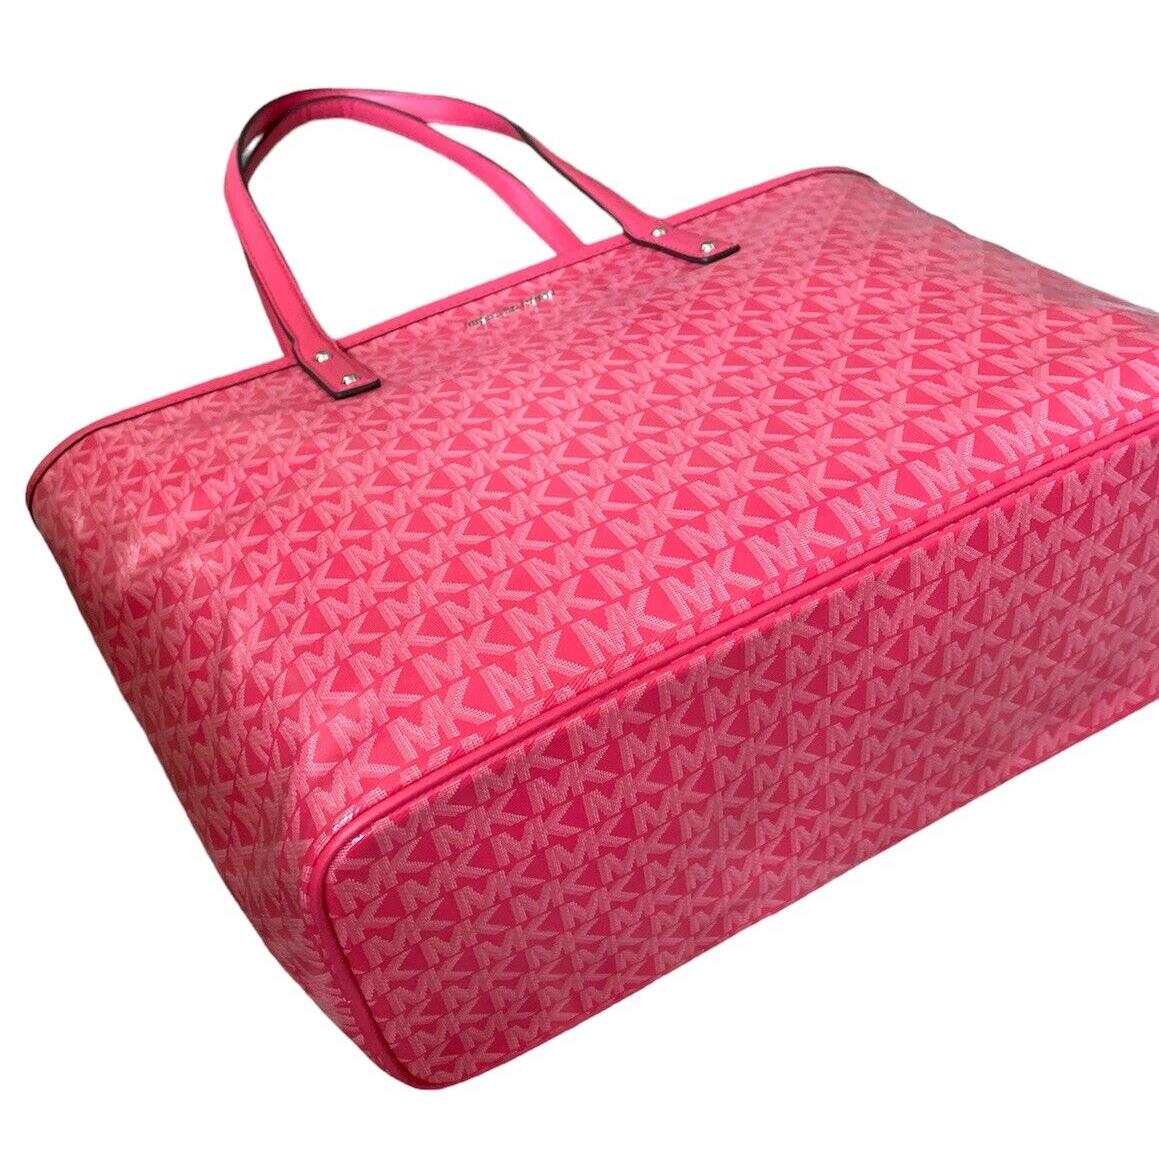 Michael Kors Signature Carter Large Top Zip Tote Bag Pink